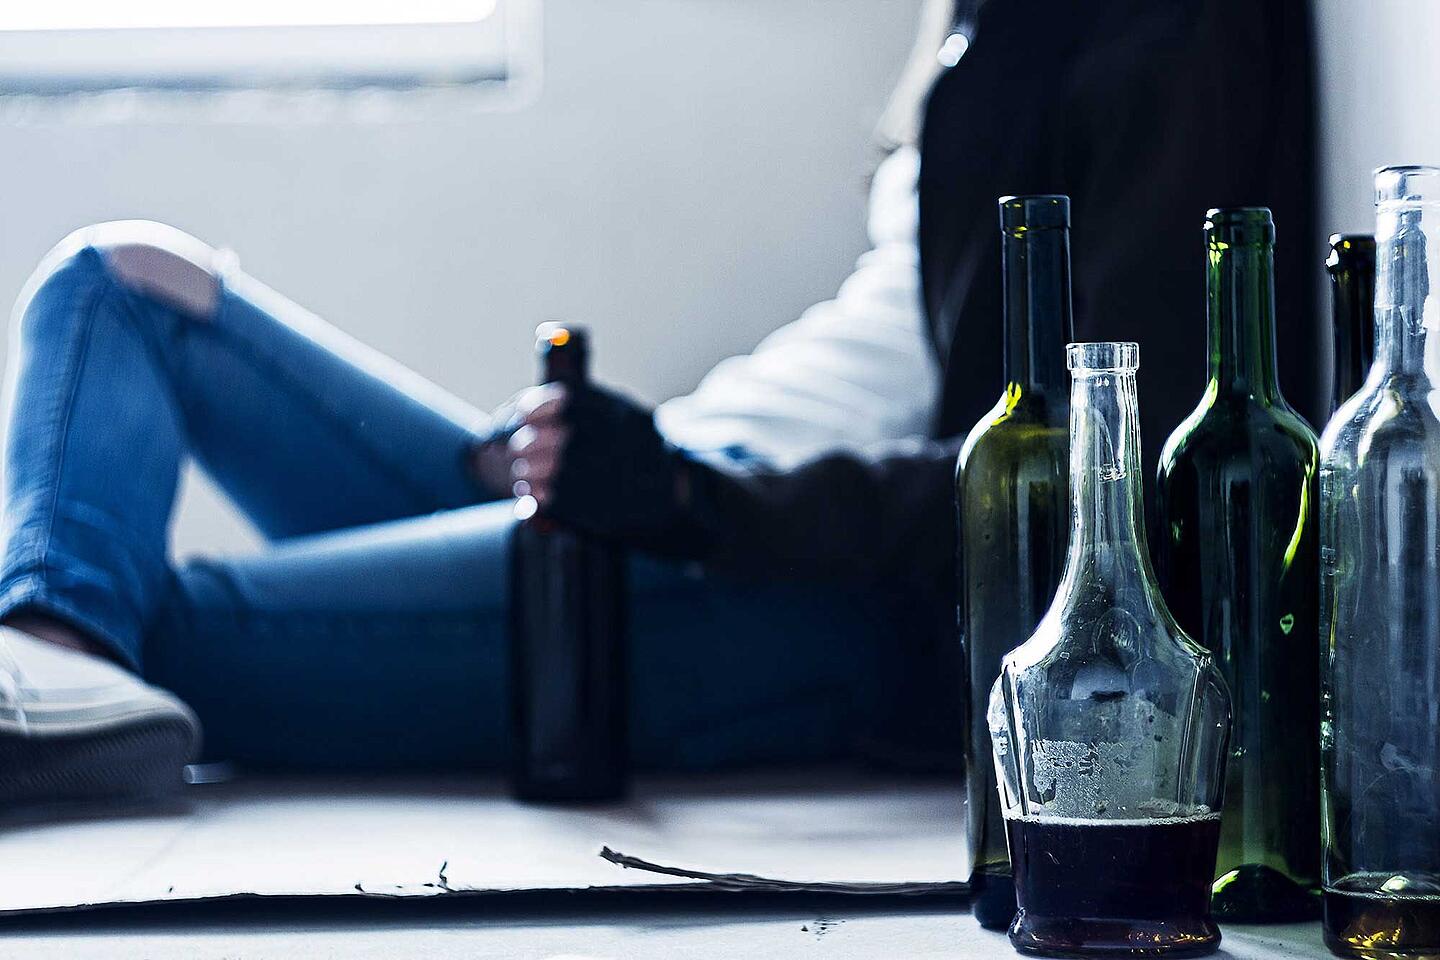 Verschiedene Flaschen stehen auf dem Boden, dahinter sitzt eine Person mit einer Flasche in der Hand